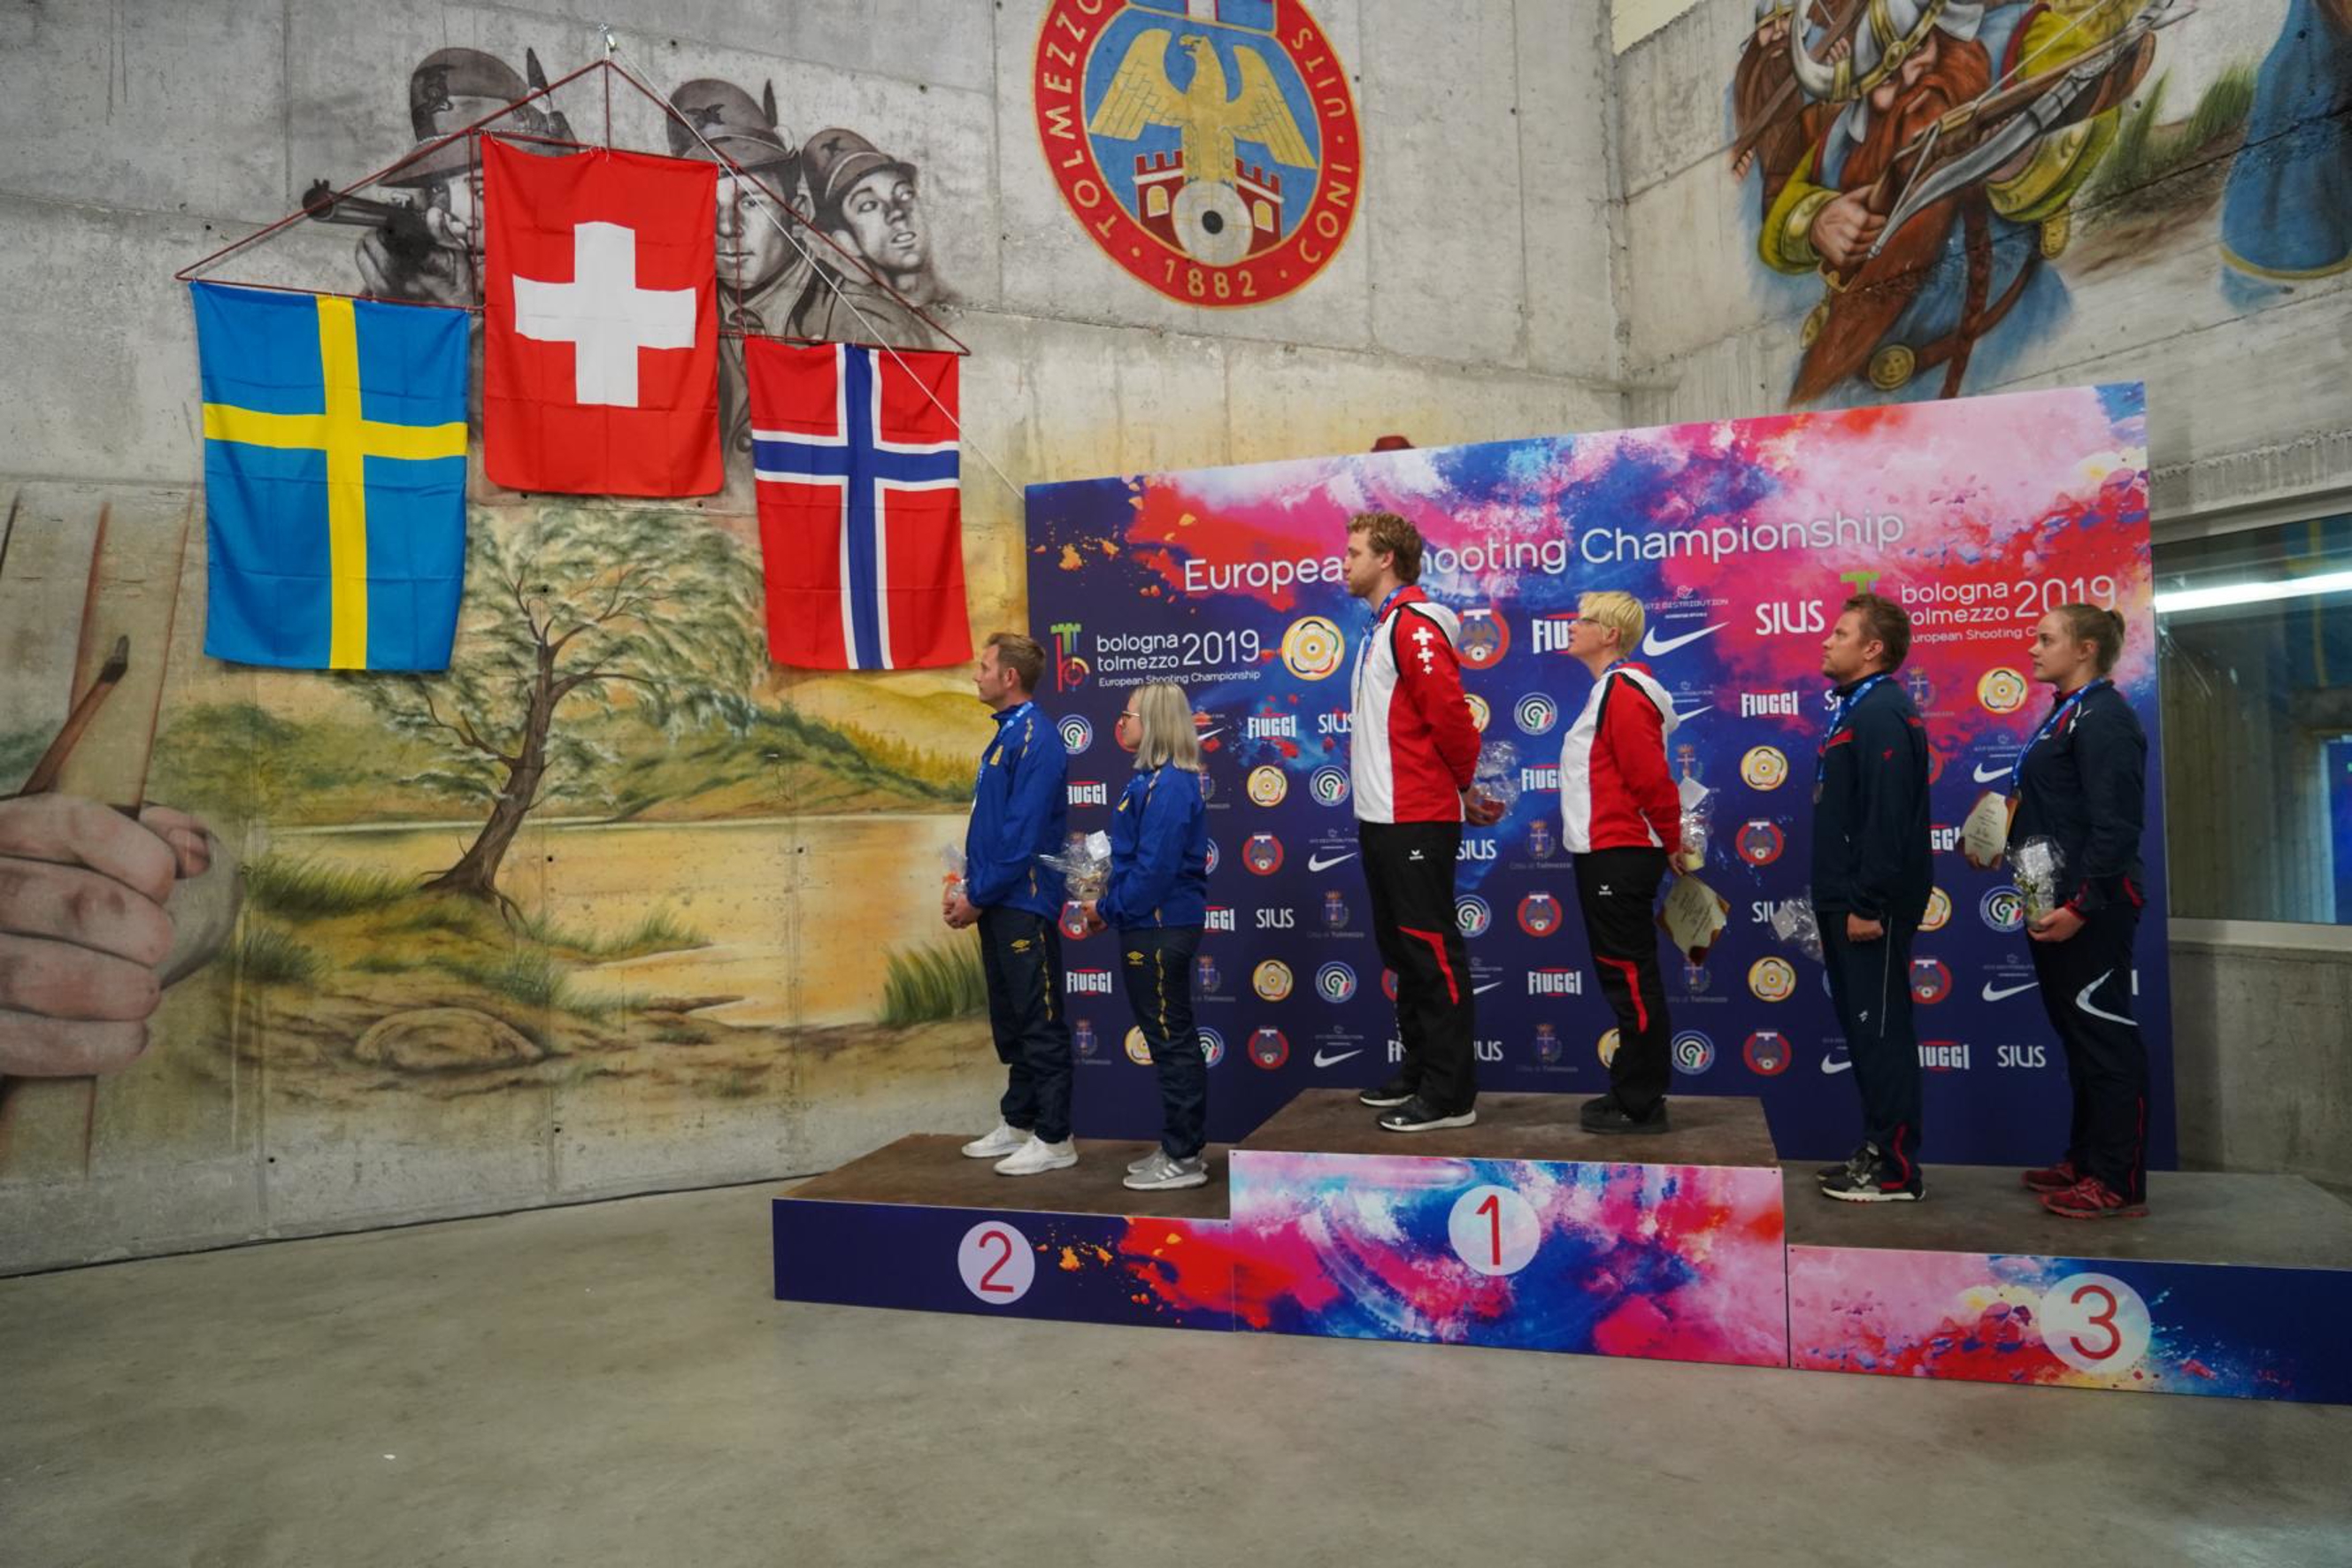 Ein Bild, an das man sich gewöhnen kann: die Schweizer Flagge in der Mitte.
(Bild: Alain Guignard)